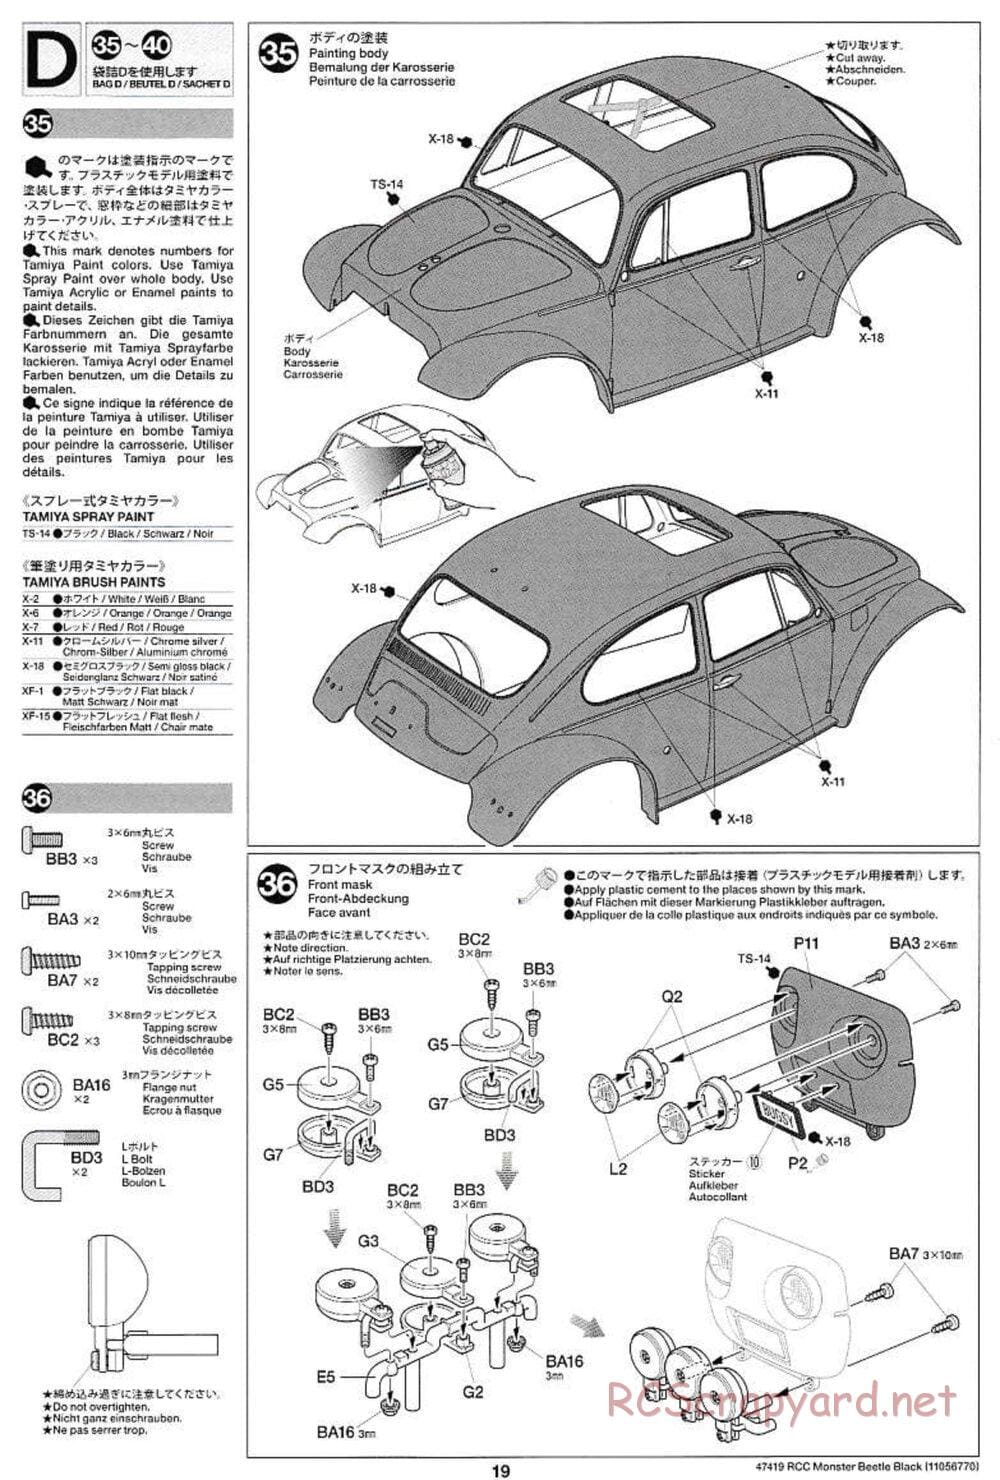 Tamiya - Monster Beetle Black Edition - ORV Chassis - Manual - Page 19